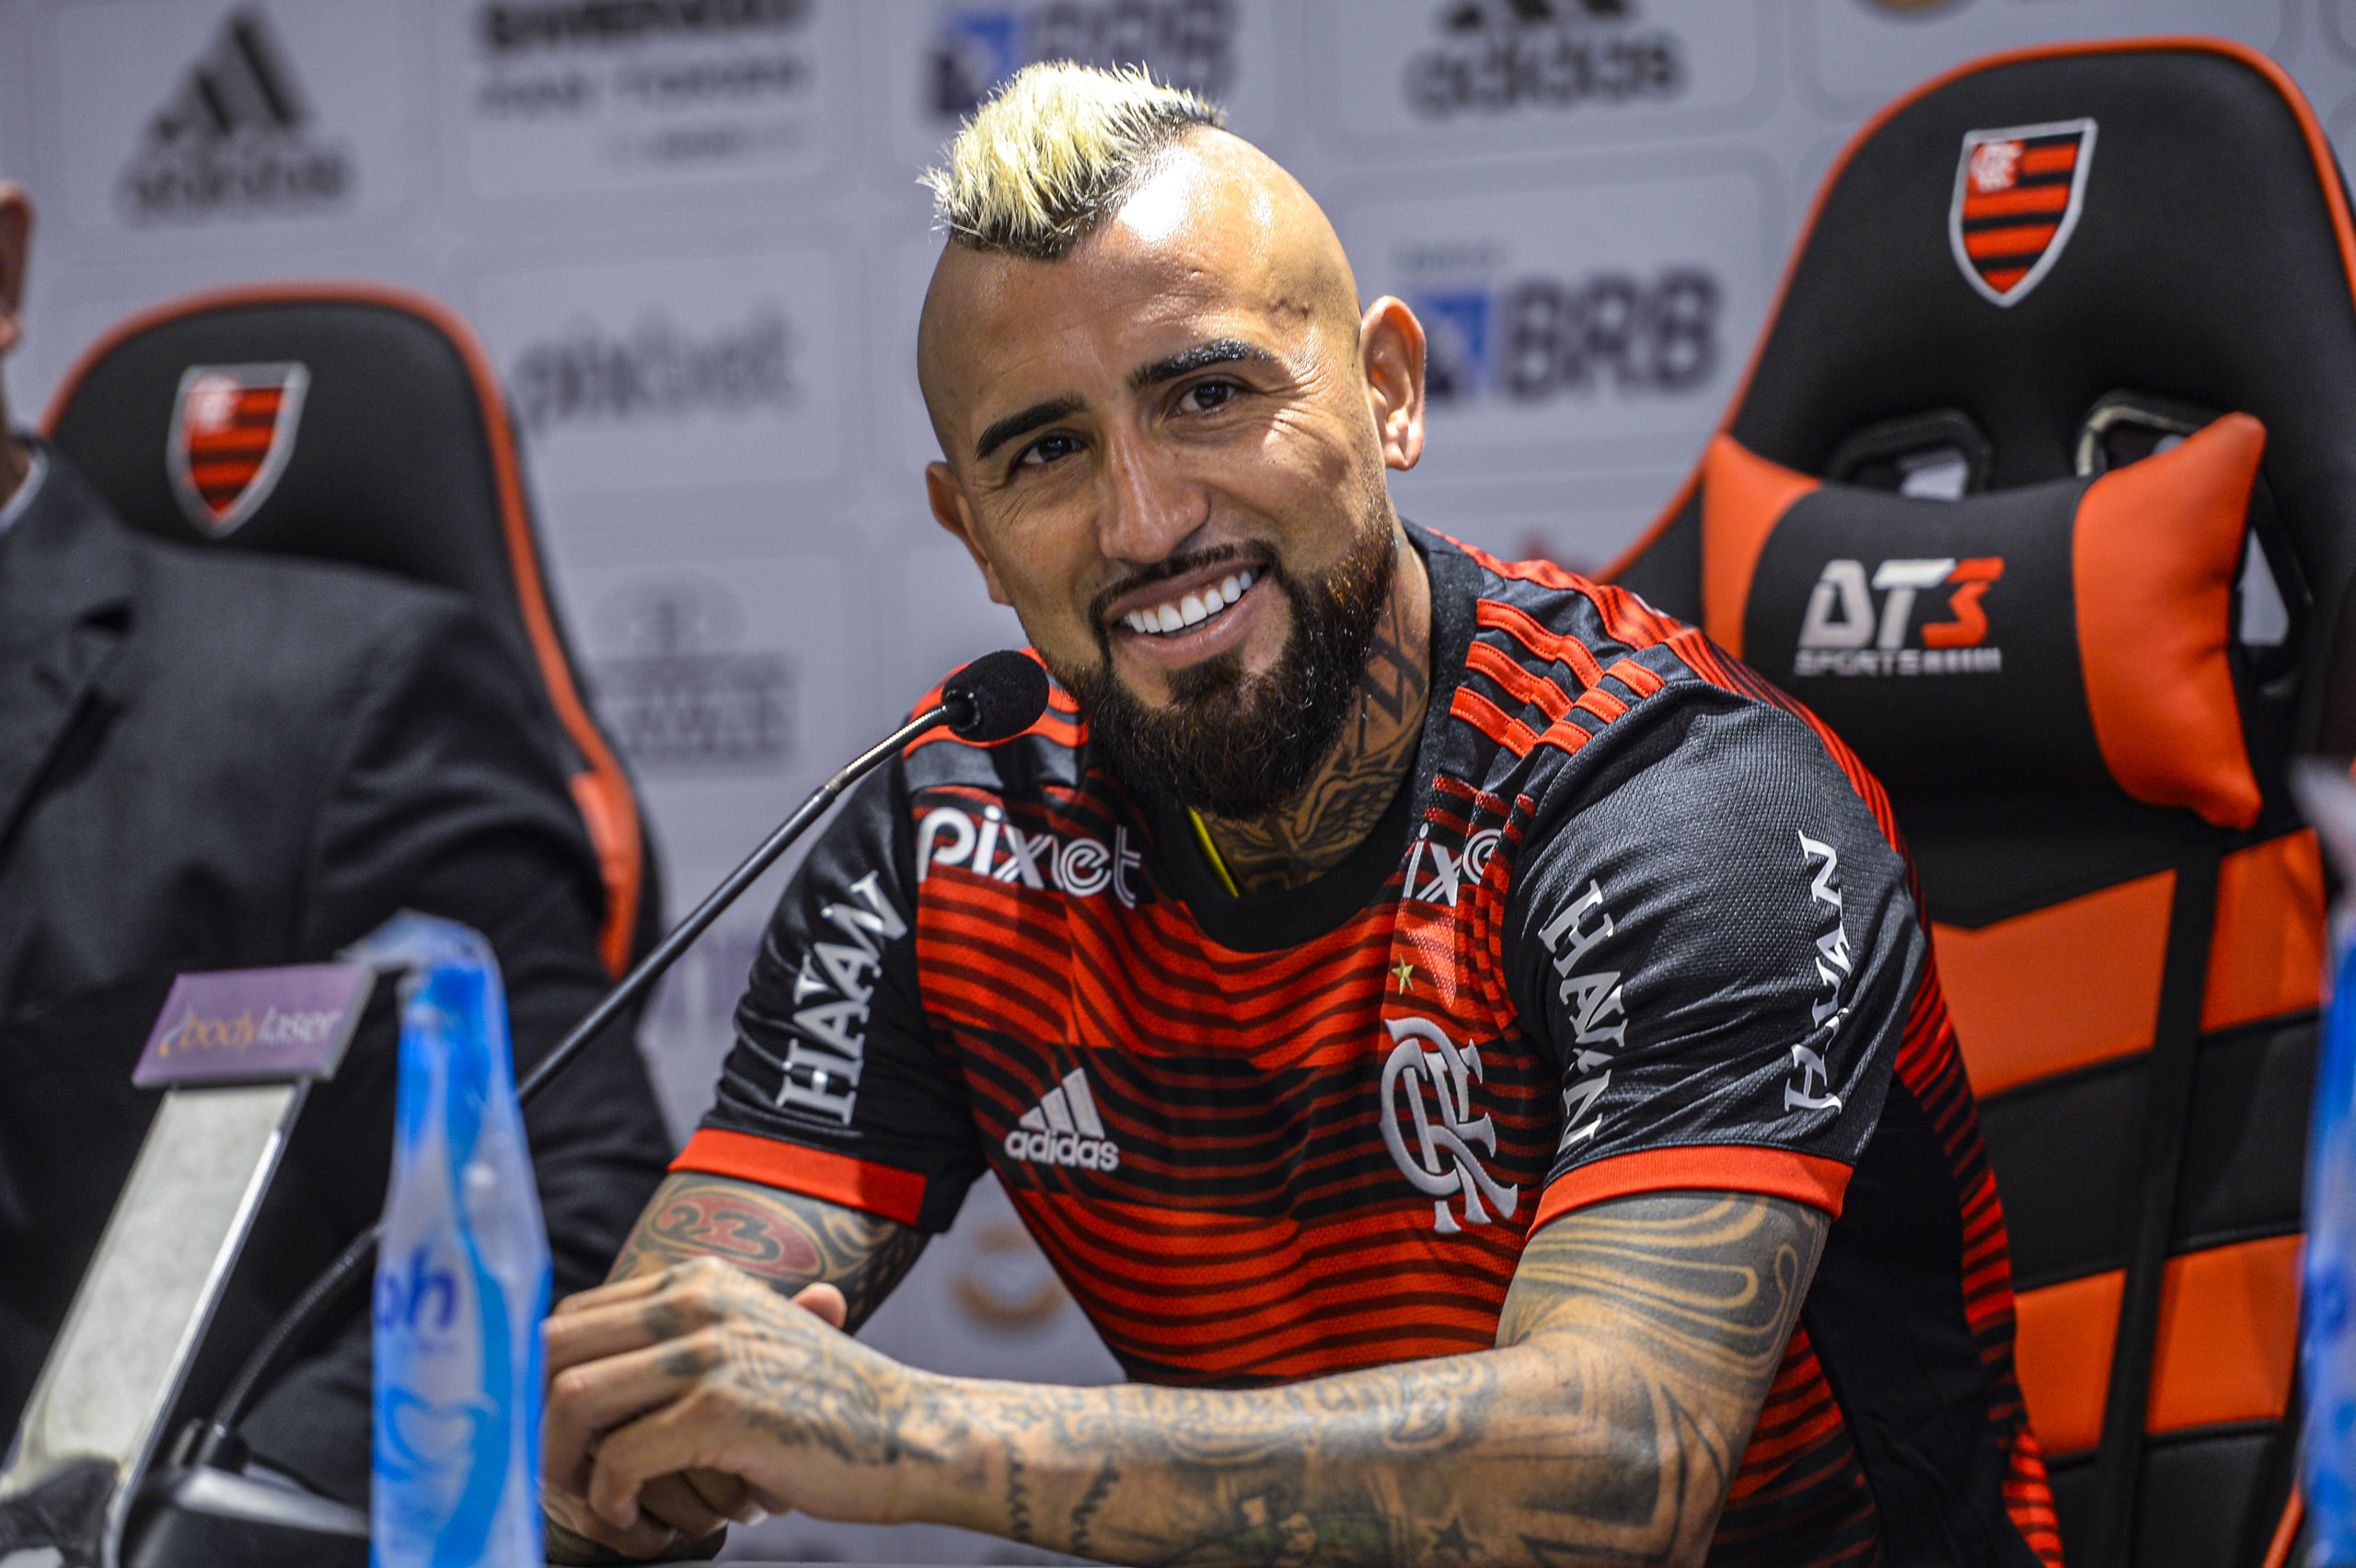 Vidal é apresentado pelo Flamengo, fala em título da Libertadores e afirma: ‘Momento mais feliz da minha carreira’